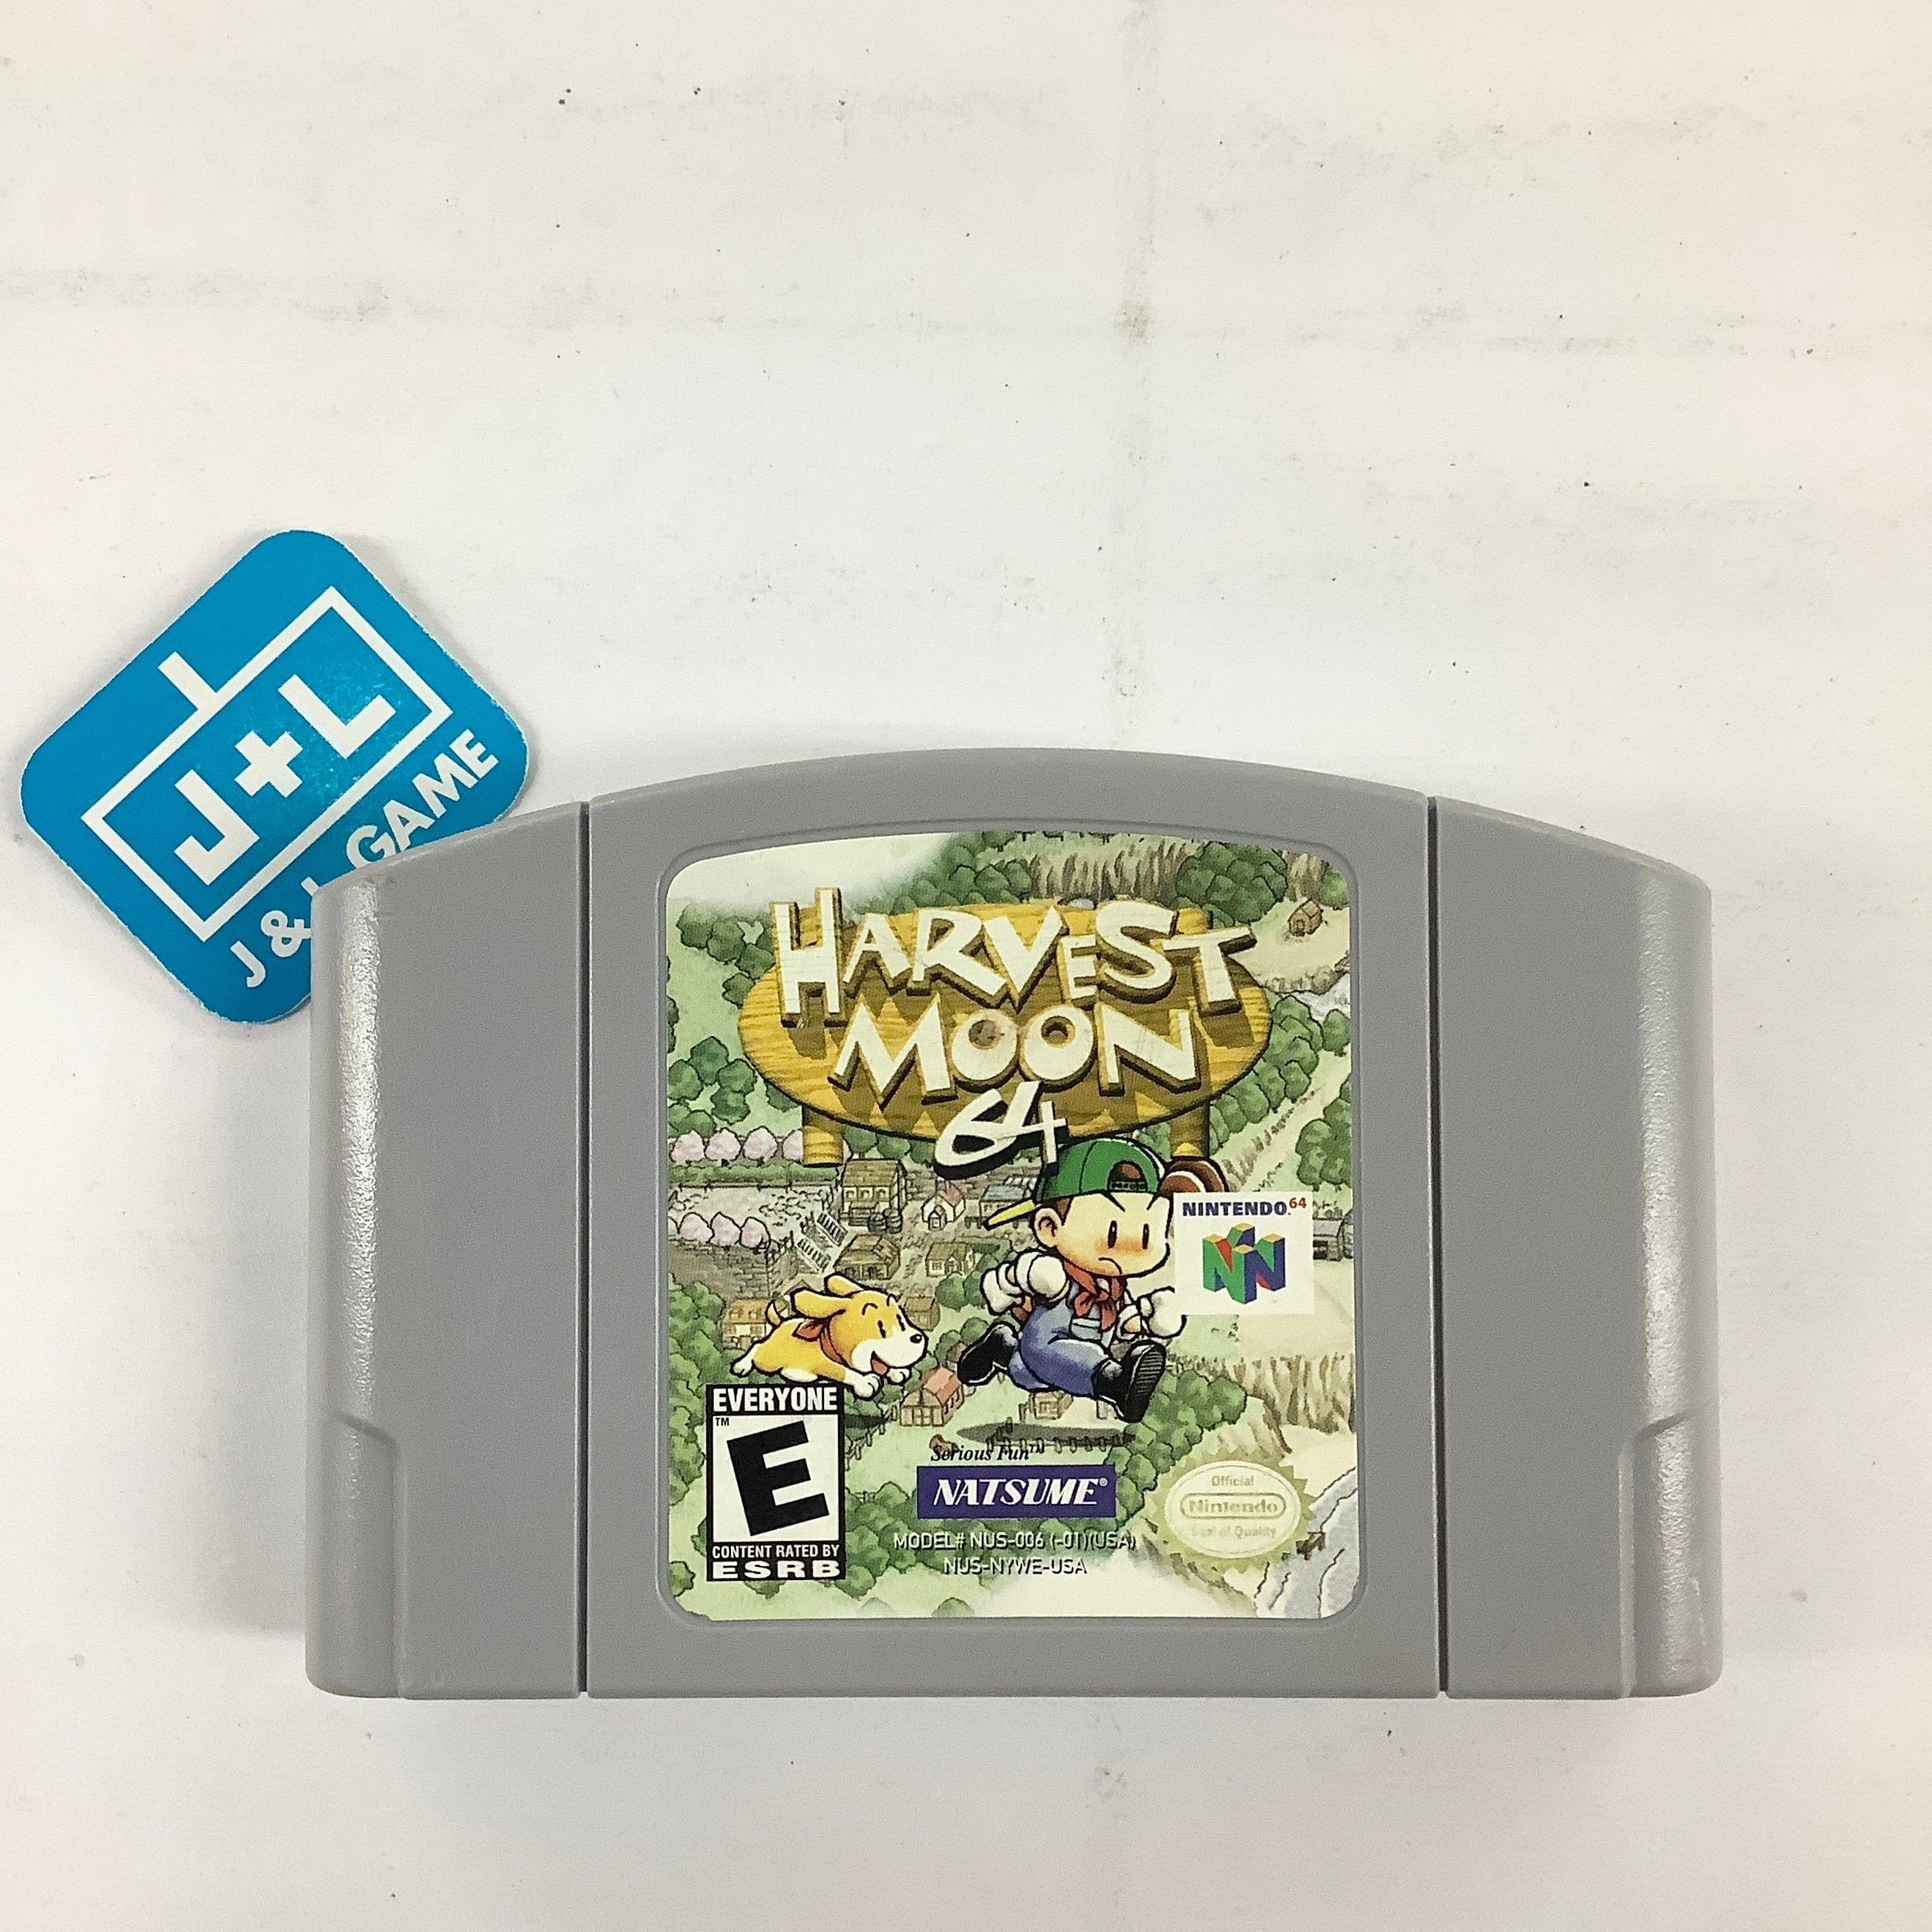 Harvest Moon 64 - (N64) Nintendo 64 [Pre-Owned] Video Games Natsume   